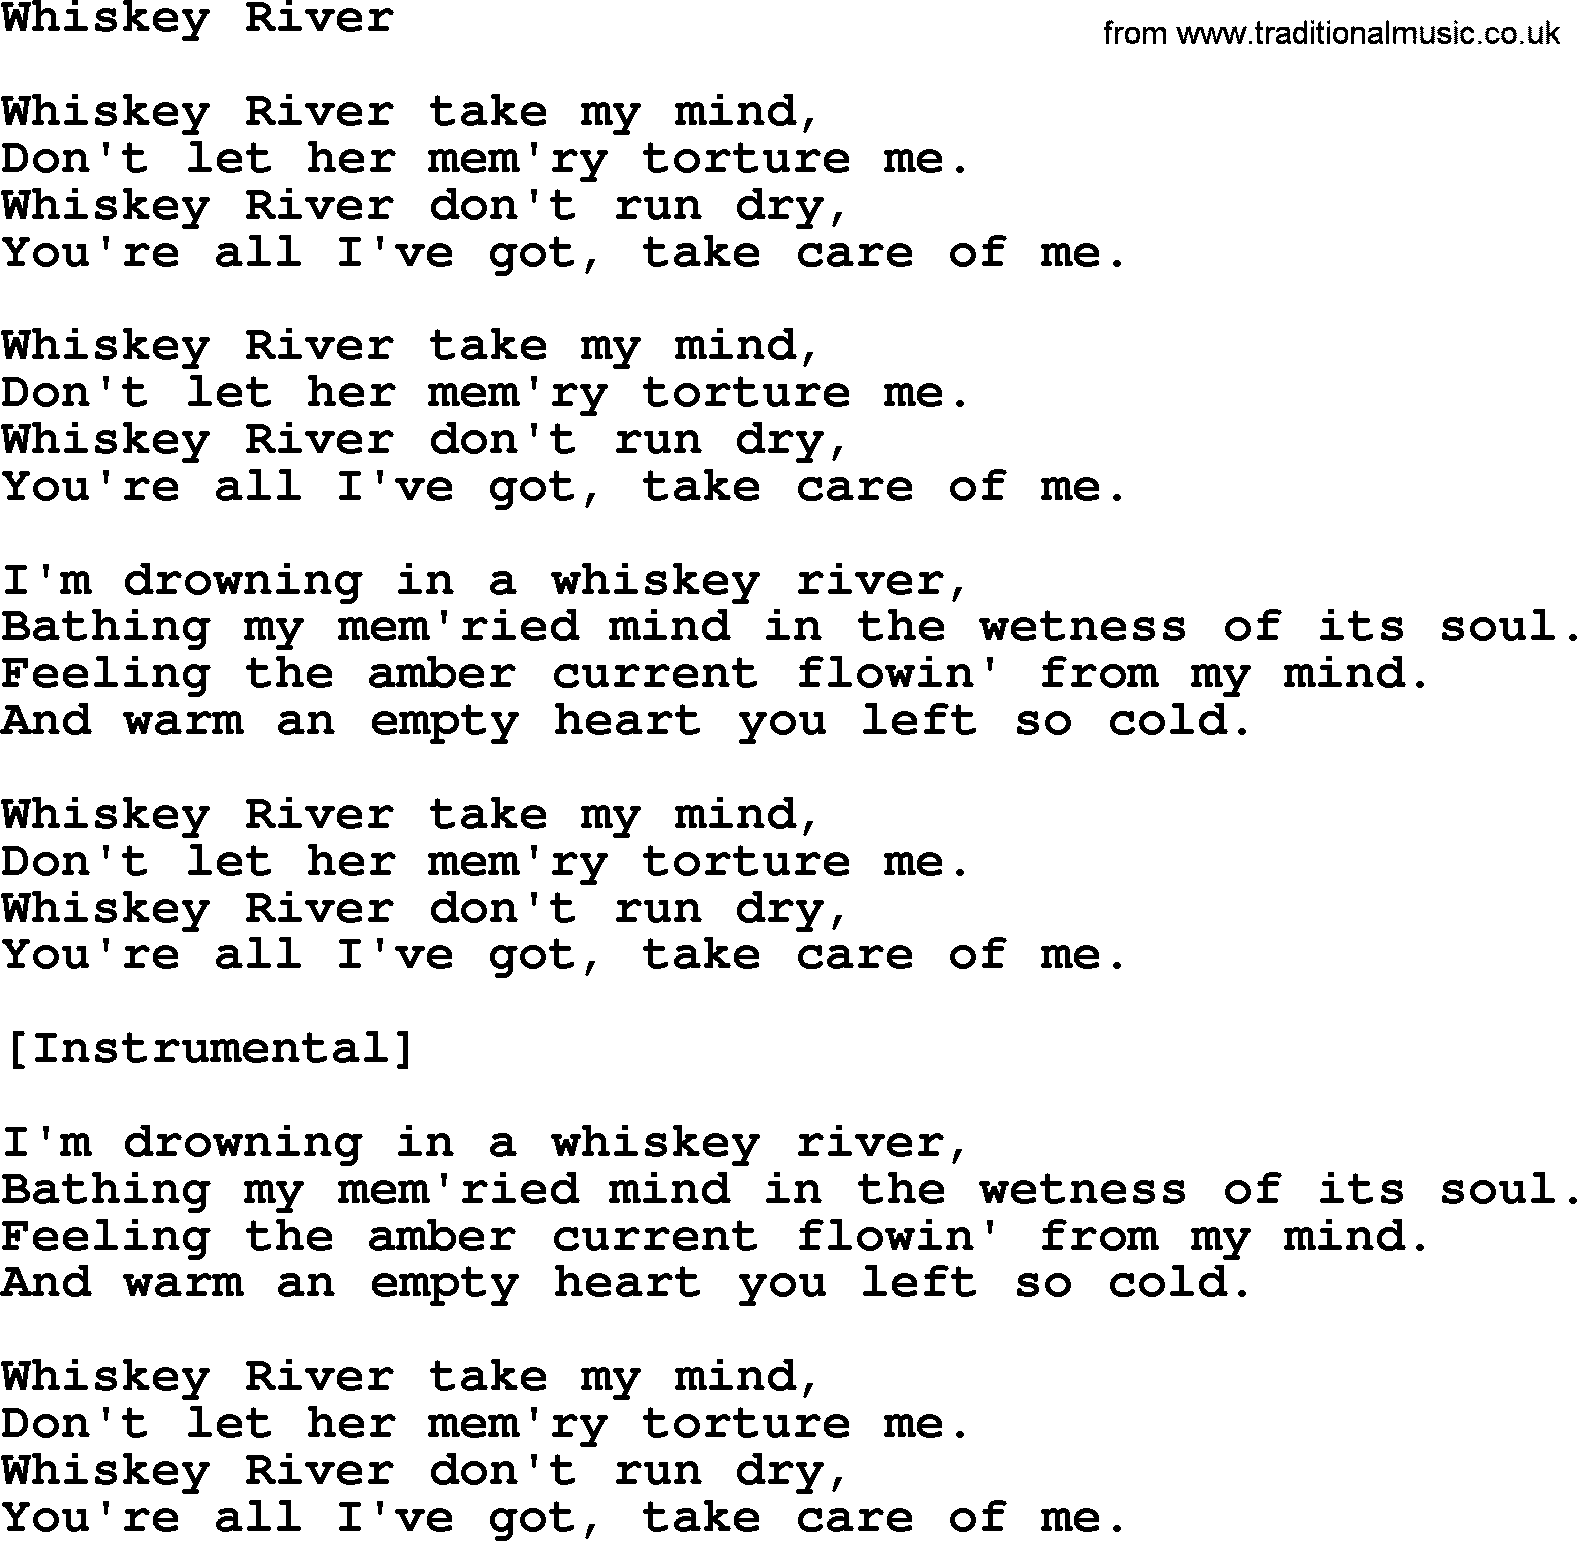 Willie Nelson song: Whiskey River lyrics